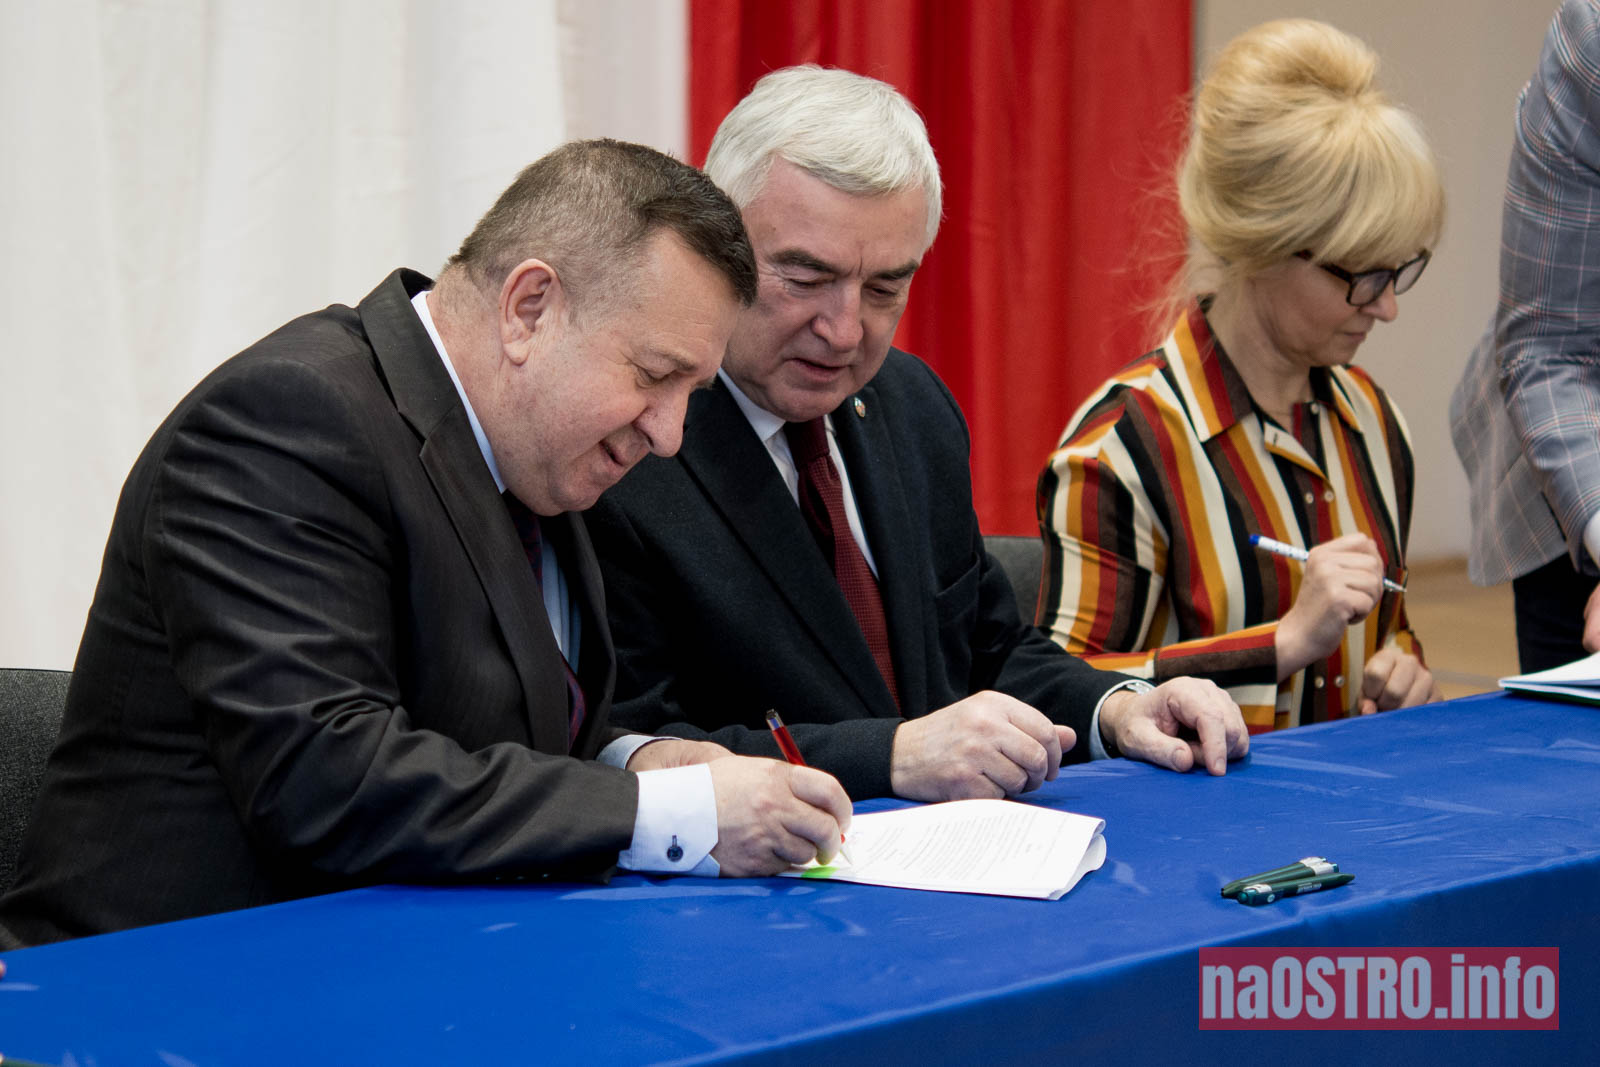 NaOSTROinfo Podpisanie umów na budowę wiejskich świetlic Bałtów 2021-21